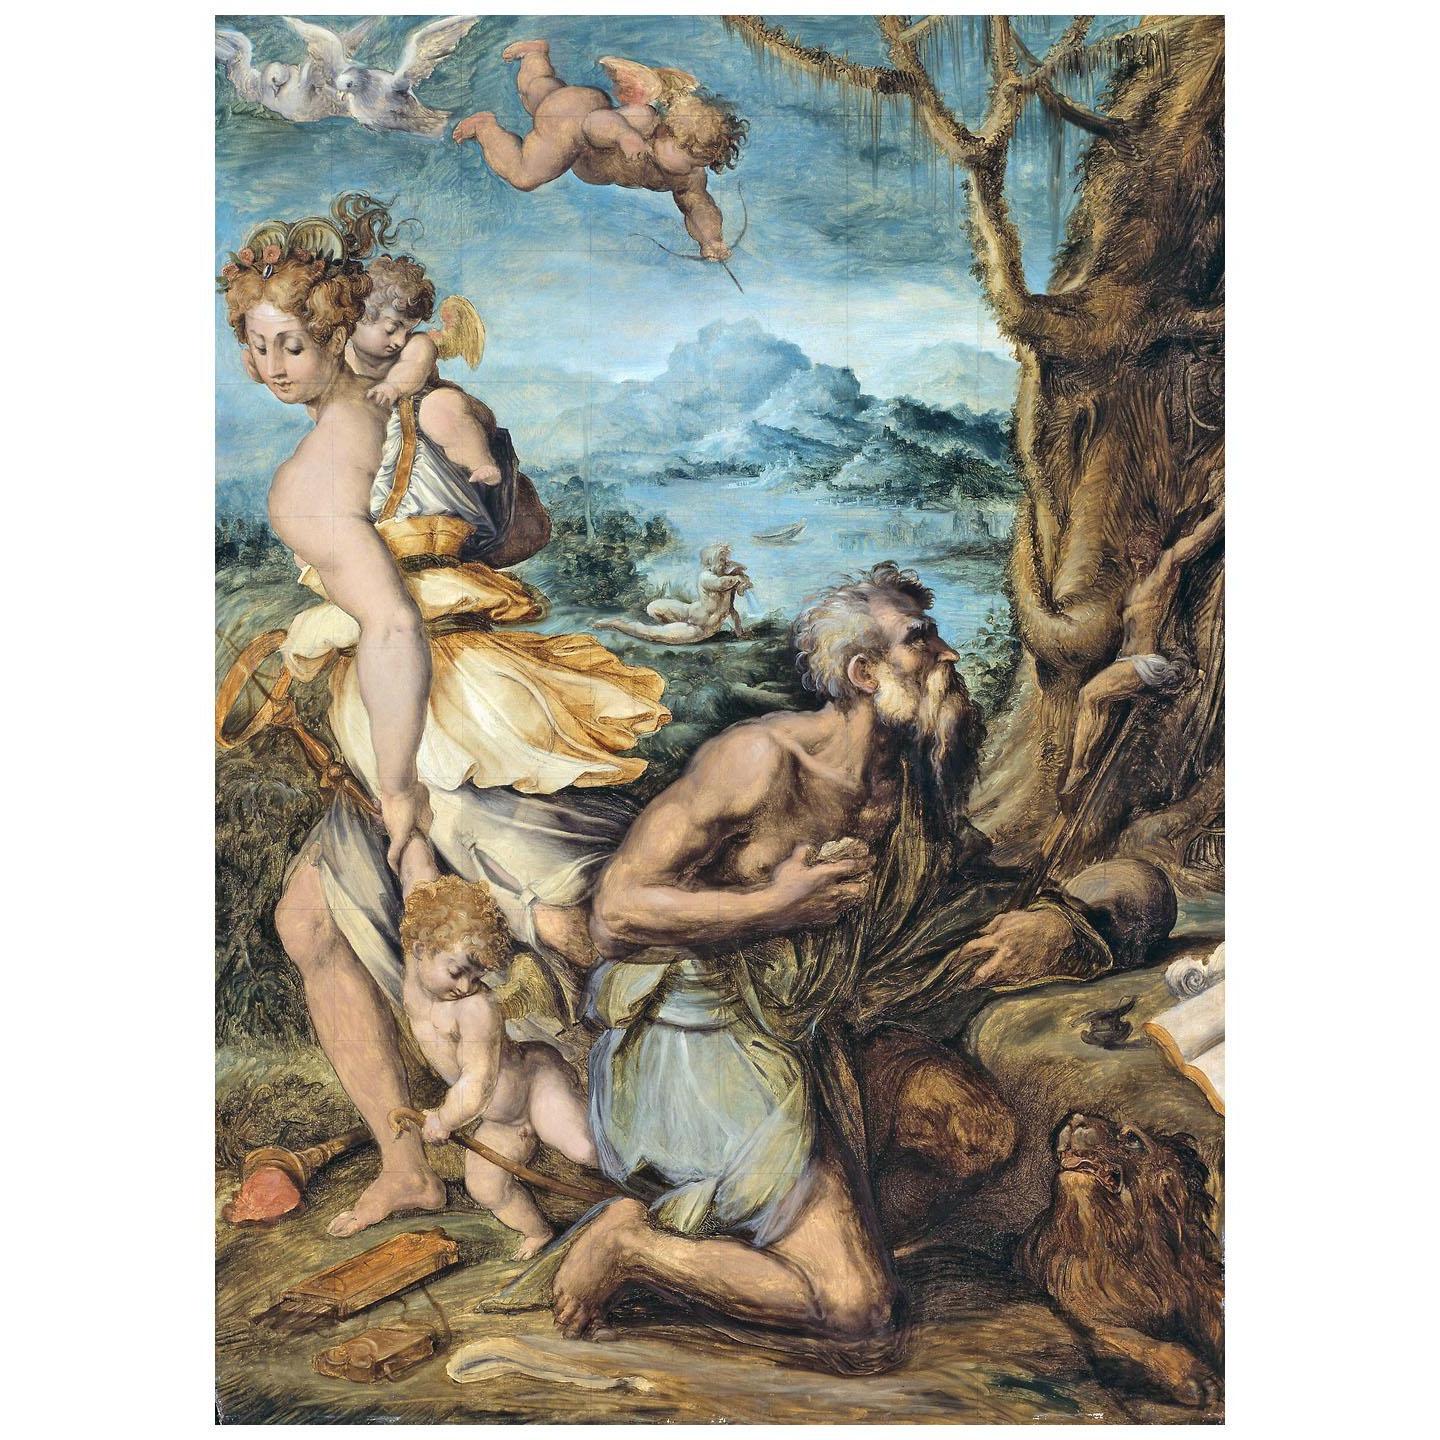 Giorgio Vasari. La tentazione di San Girolamo. 1541. Art Institute of Chicago